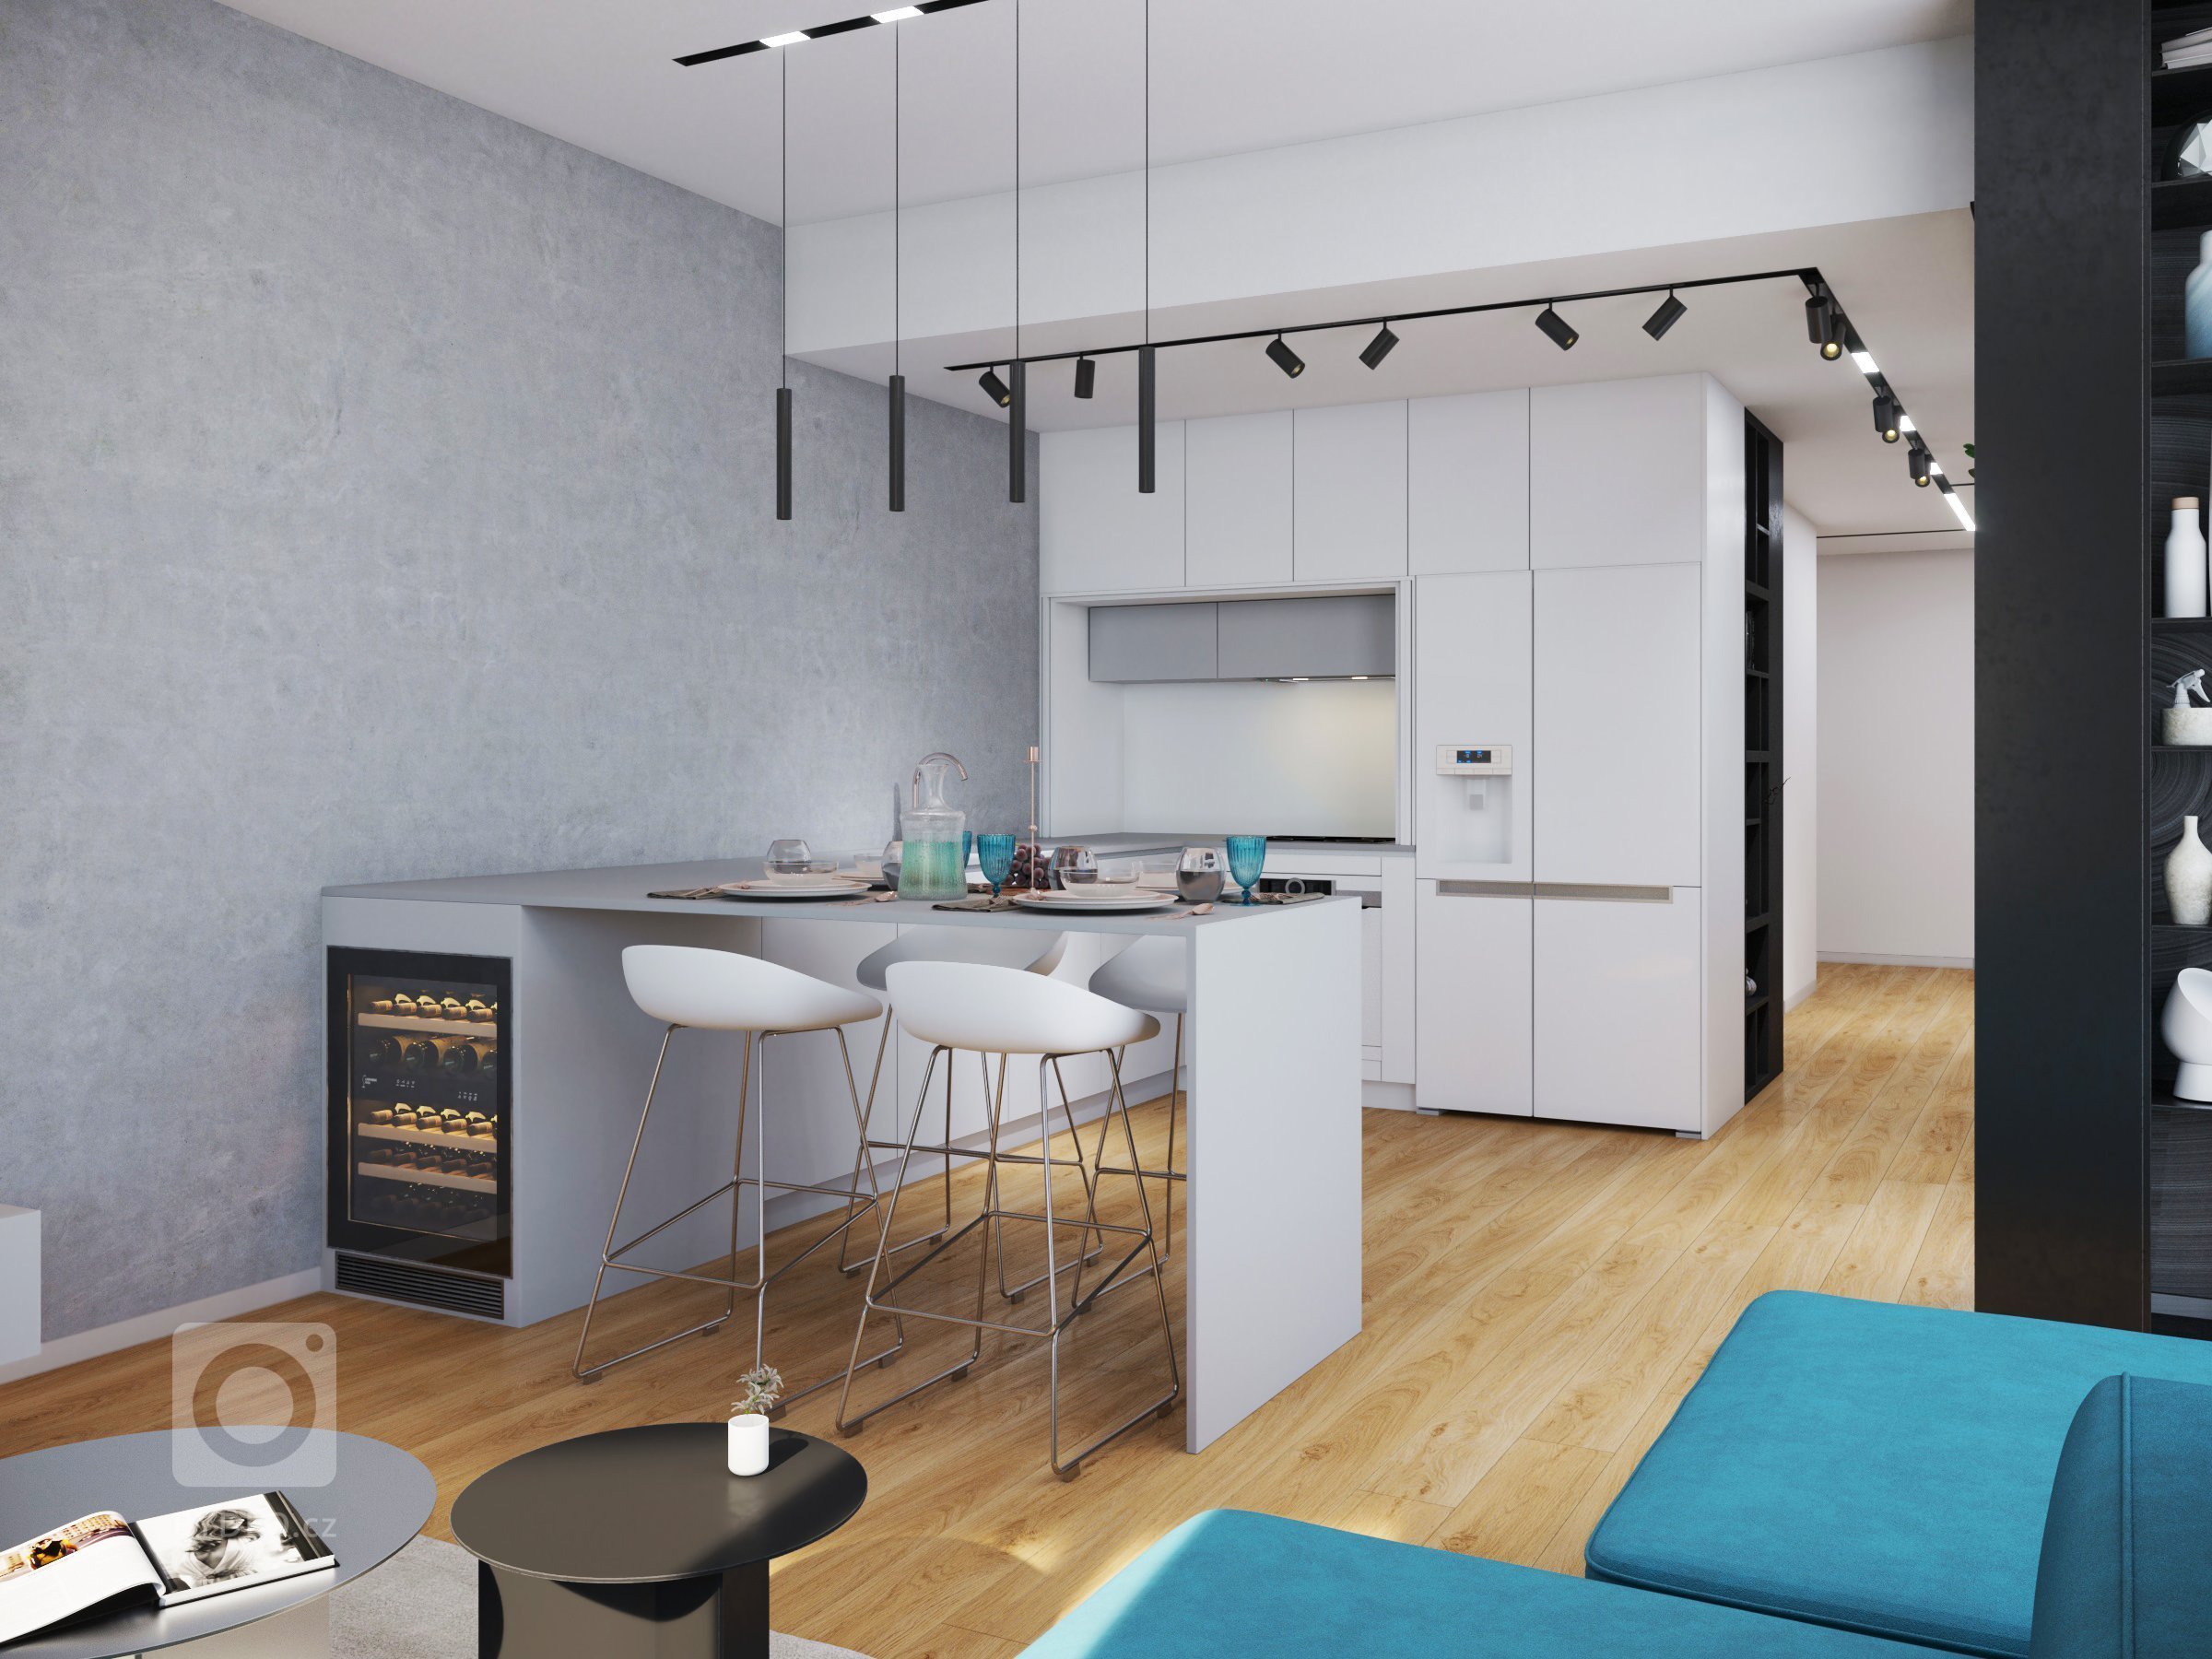 Kuchyňa s obývačkou v SKY PARKU , stavba navrhnutá ZAHA HADID.&nbsp;

interiér pre aktívného klienta s dominanciou minimalistického prevedenia s výraznou…